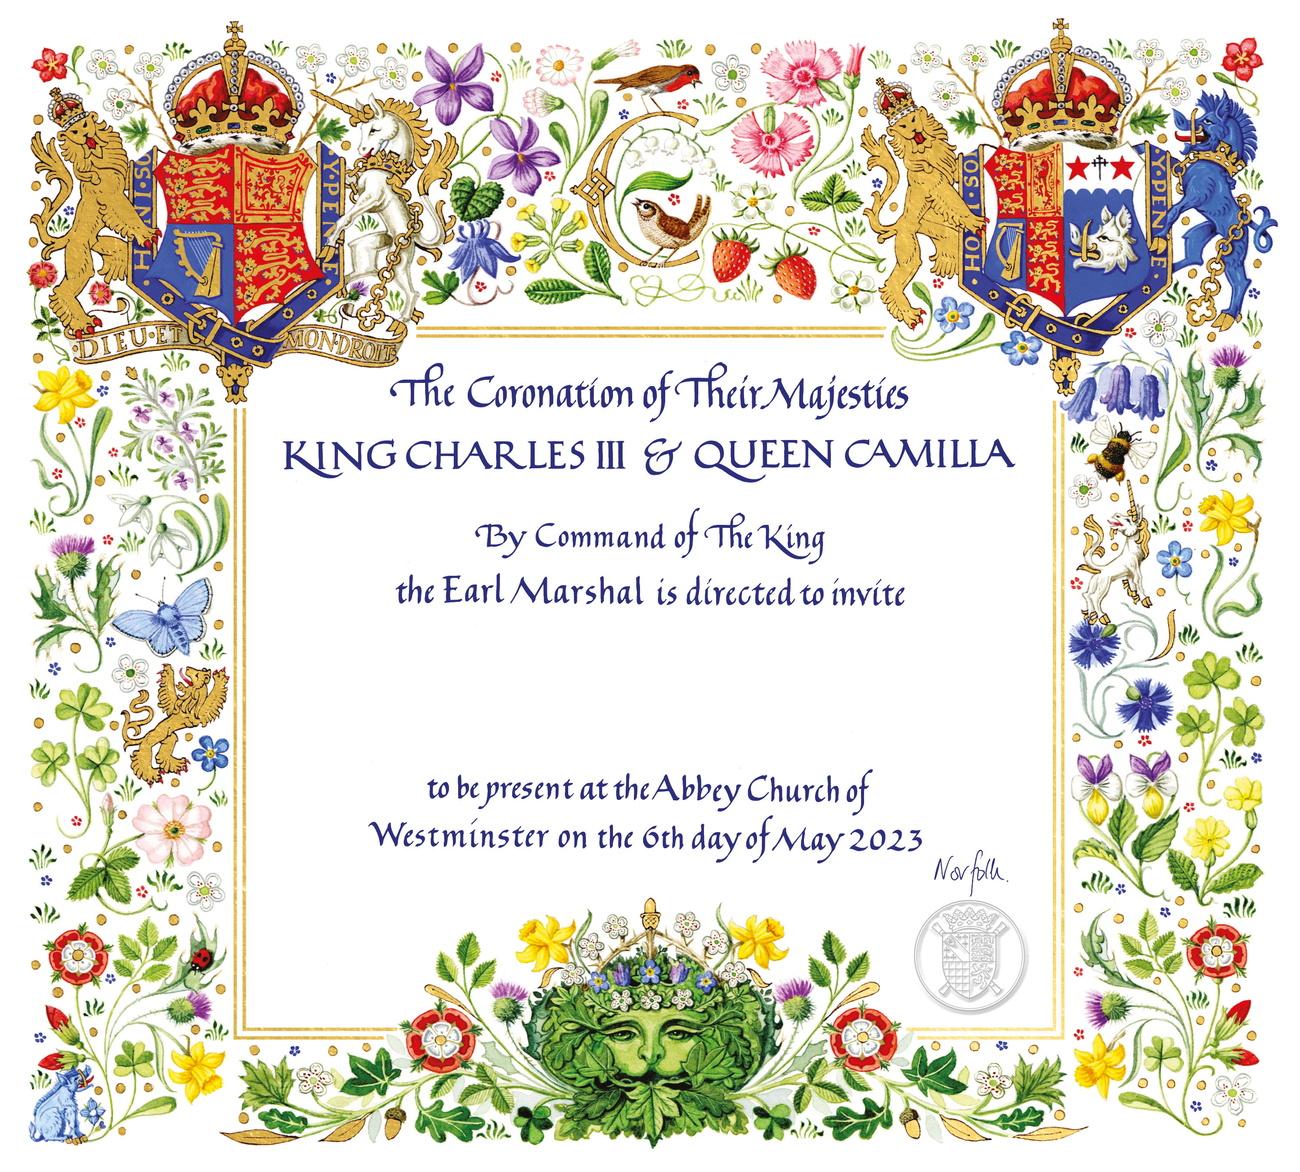 L'invitation officielle envoyée par le roi de 74 ans et "la reine Camilla", 75 ans, décrite ainsi pour la première fois sans le titre complet de "reine consort". [KEYSTONE - BUCKINGHAM PALACE]